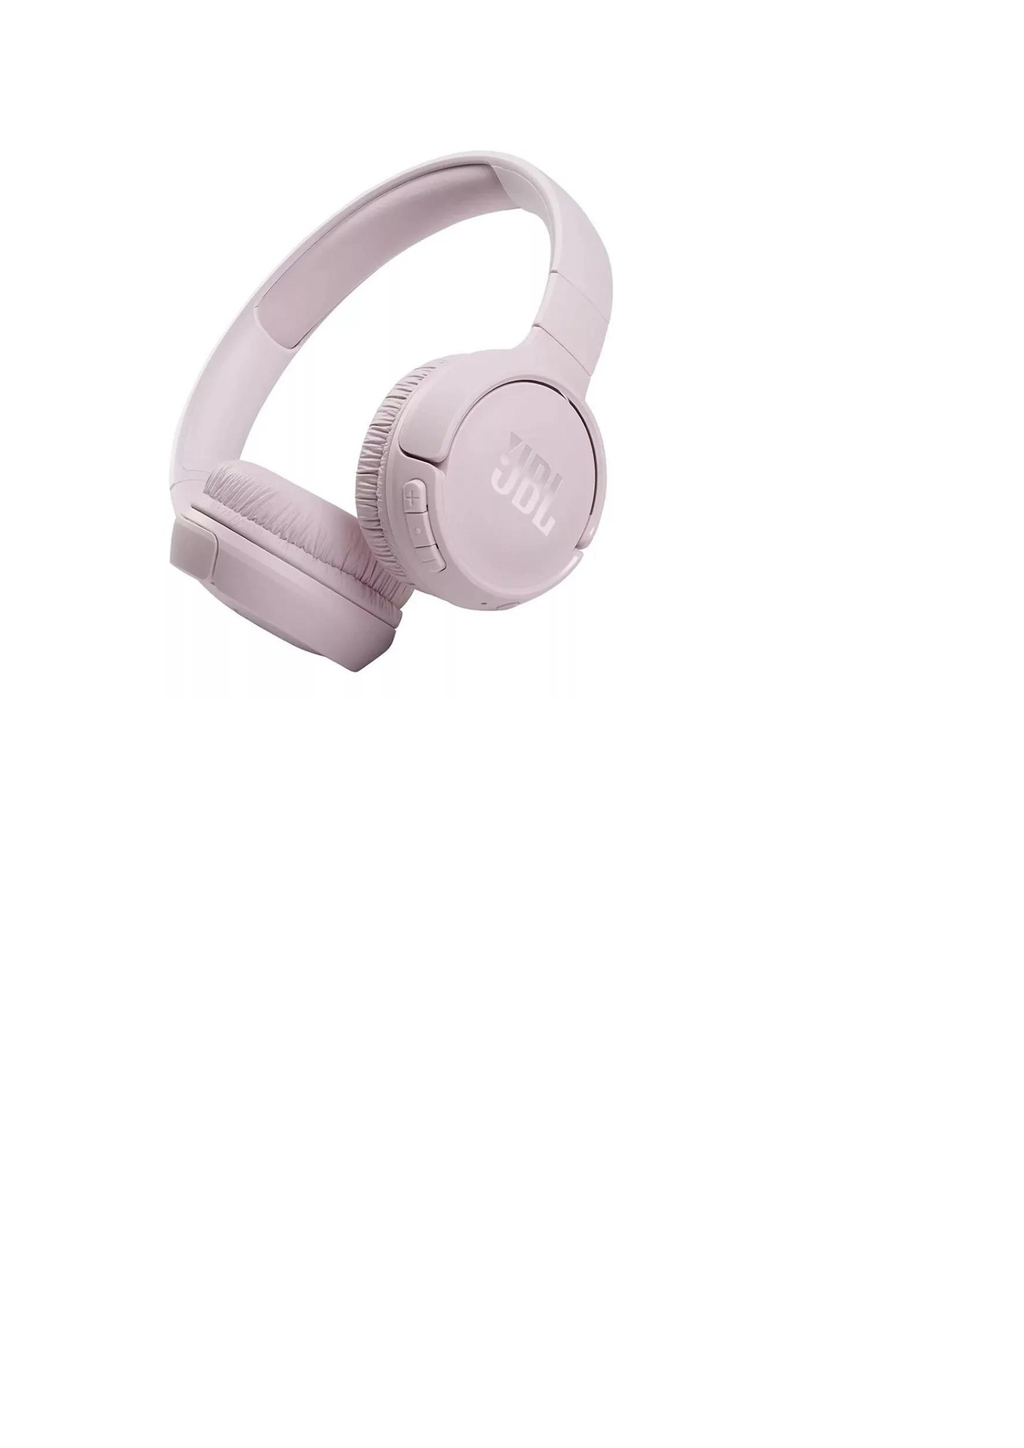 Auriculares inalámbricos on-ear JBL Tune 510BT, color Blanco